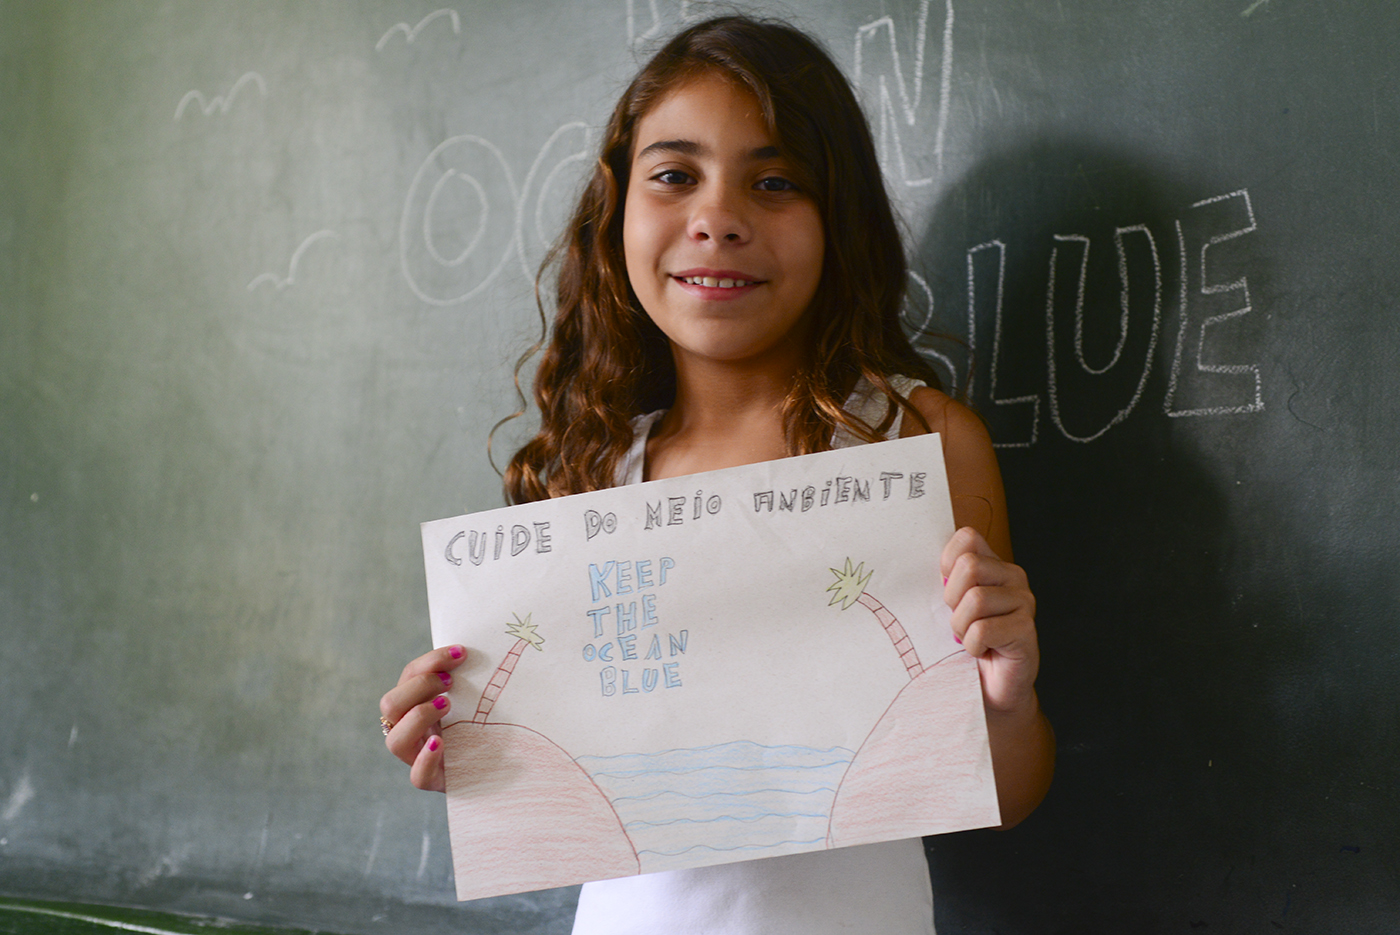 Projeto Keep The Ocean Blue visita escolas em Santa Catarina para ensinar crianças sobre a importância da preservação ambiental. Foto: Divulgação.